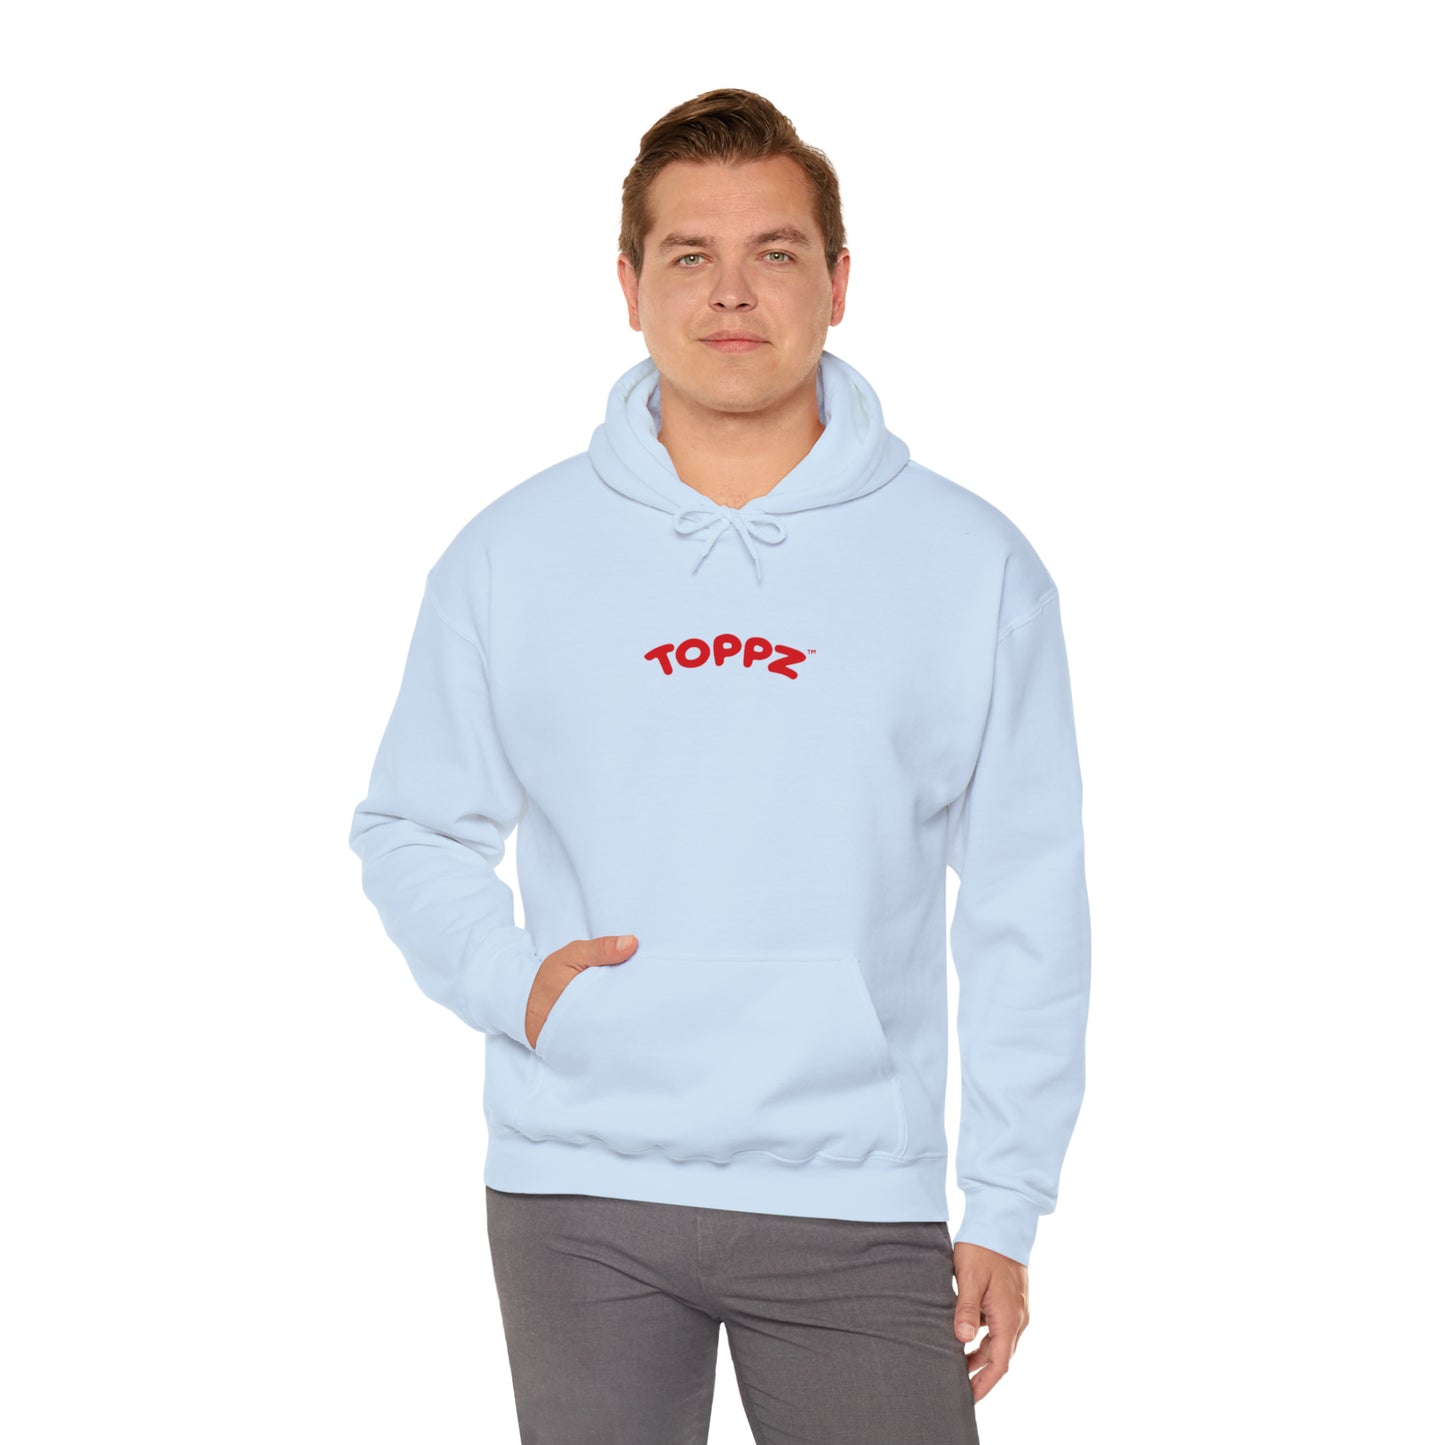 Toppz Hooded Sweatshirt